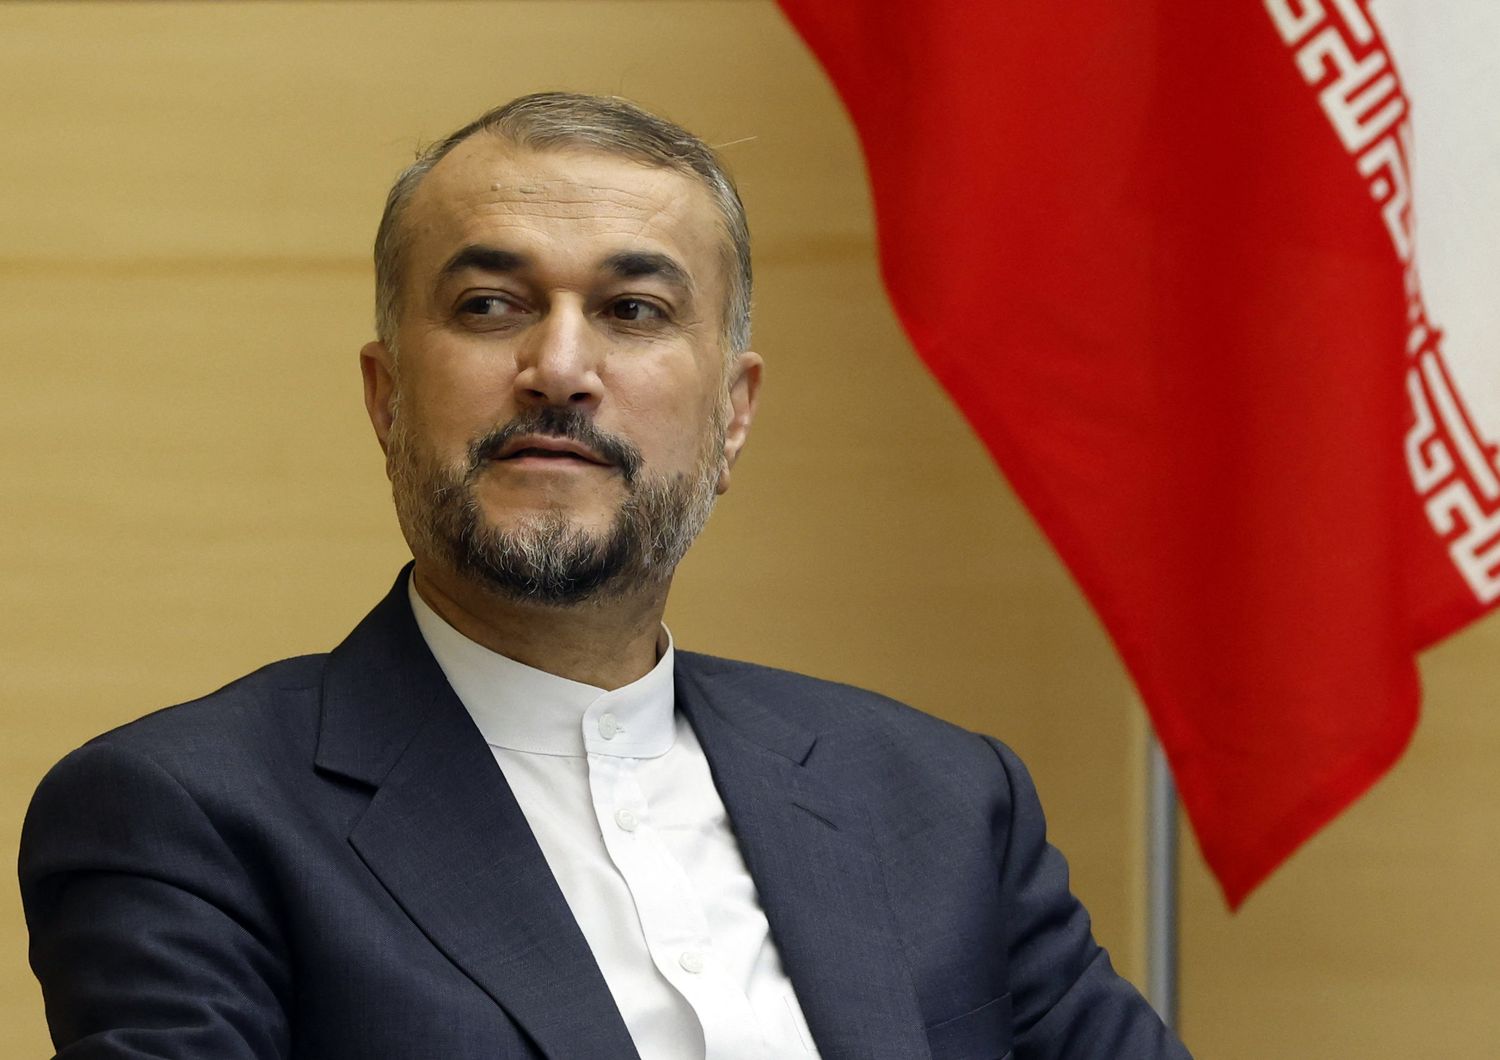 Hossein Amirabdollahian, ministro degli Esteri iraniano